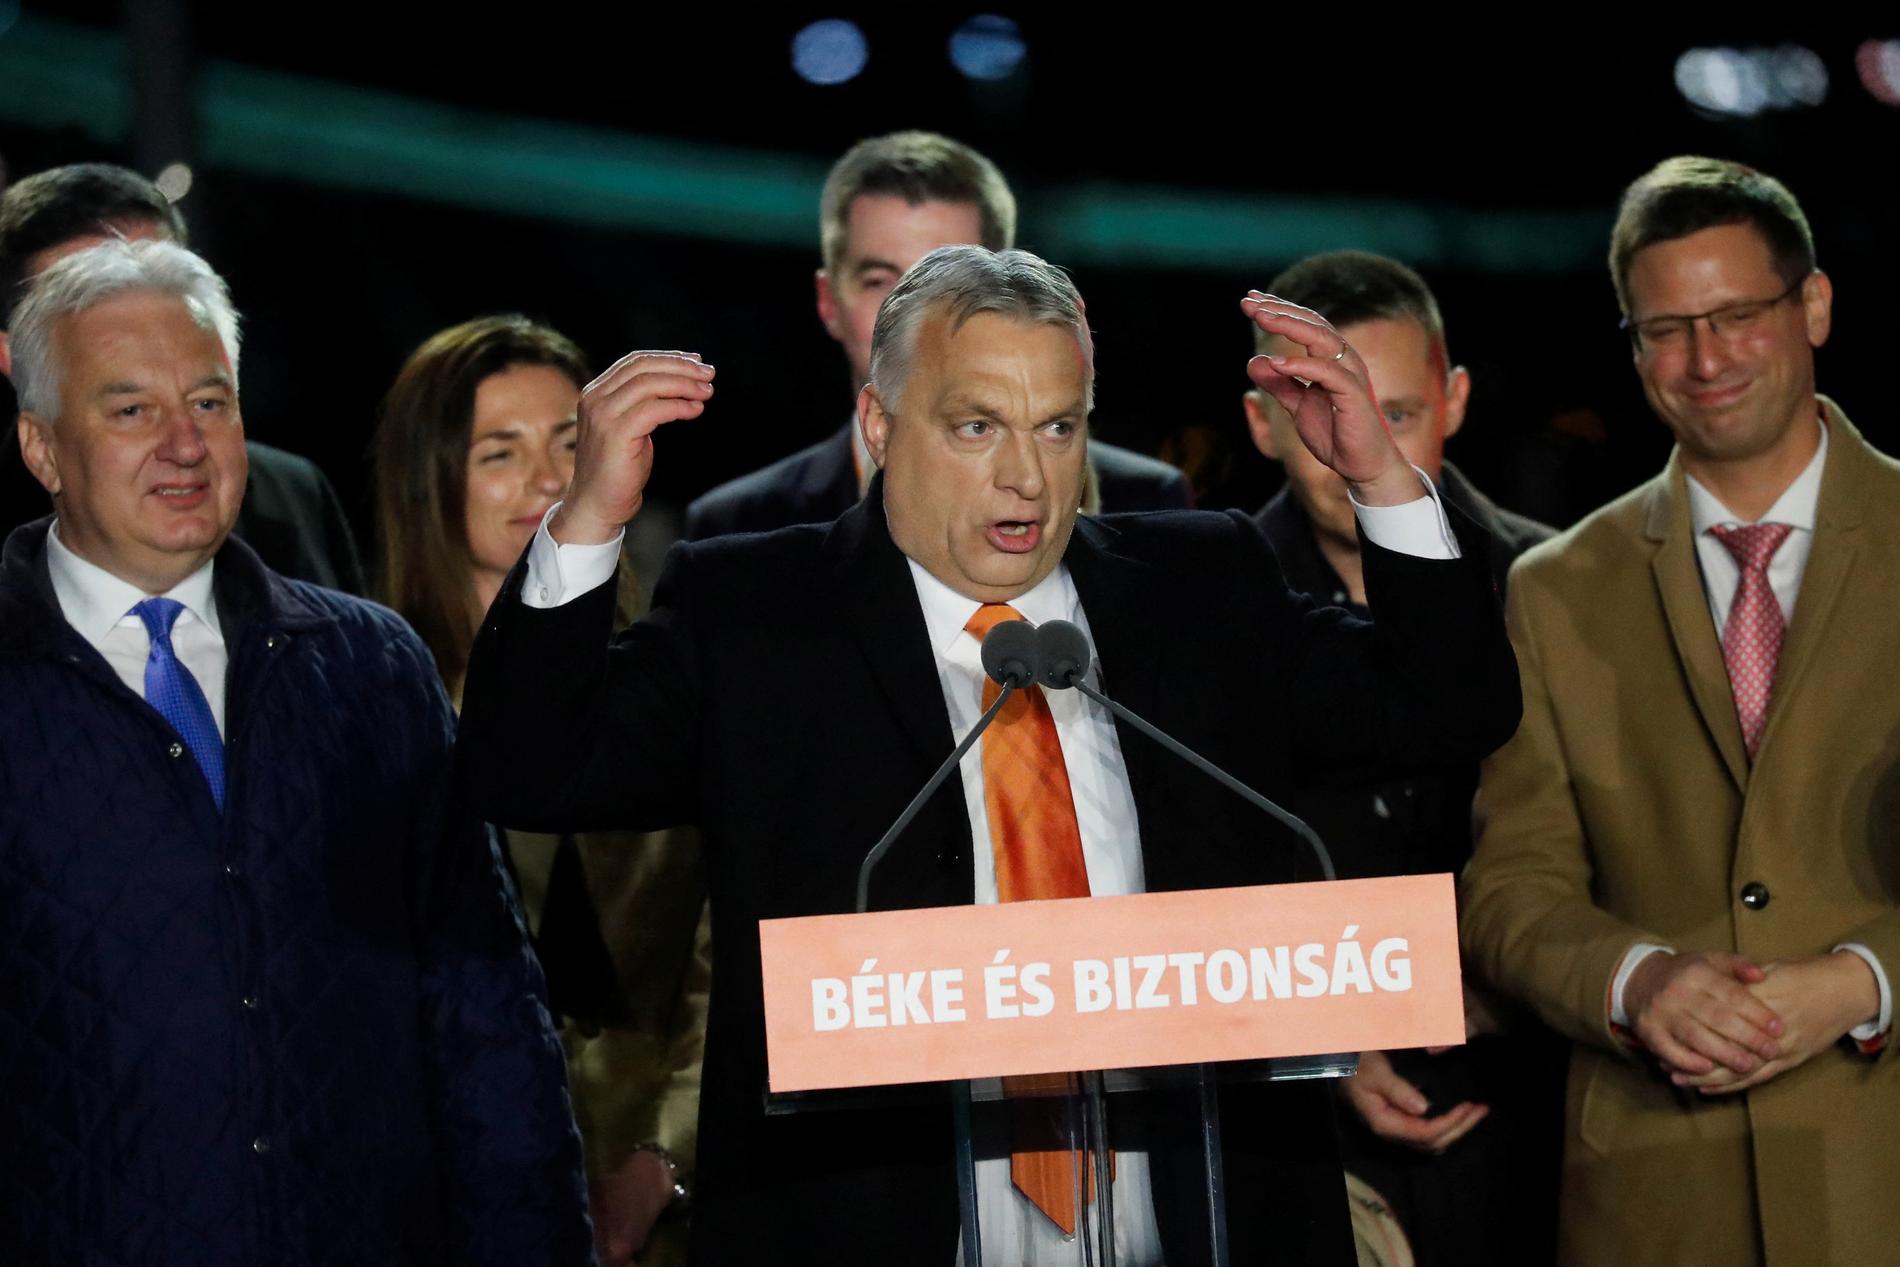 Viktor Orban announces winner of election in Hungary – VG